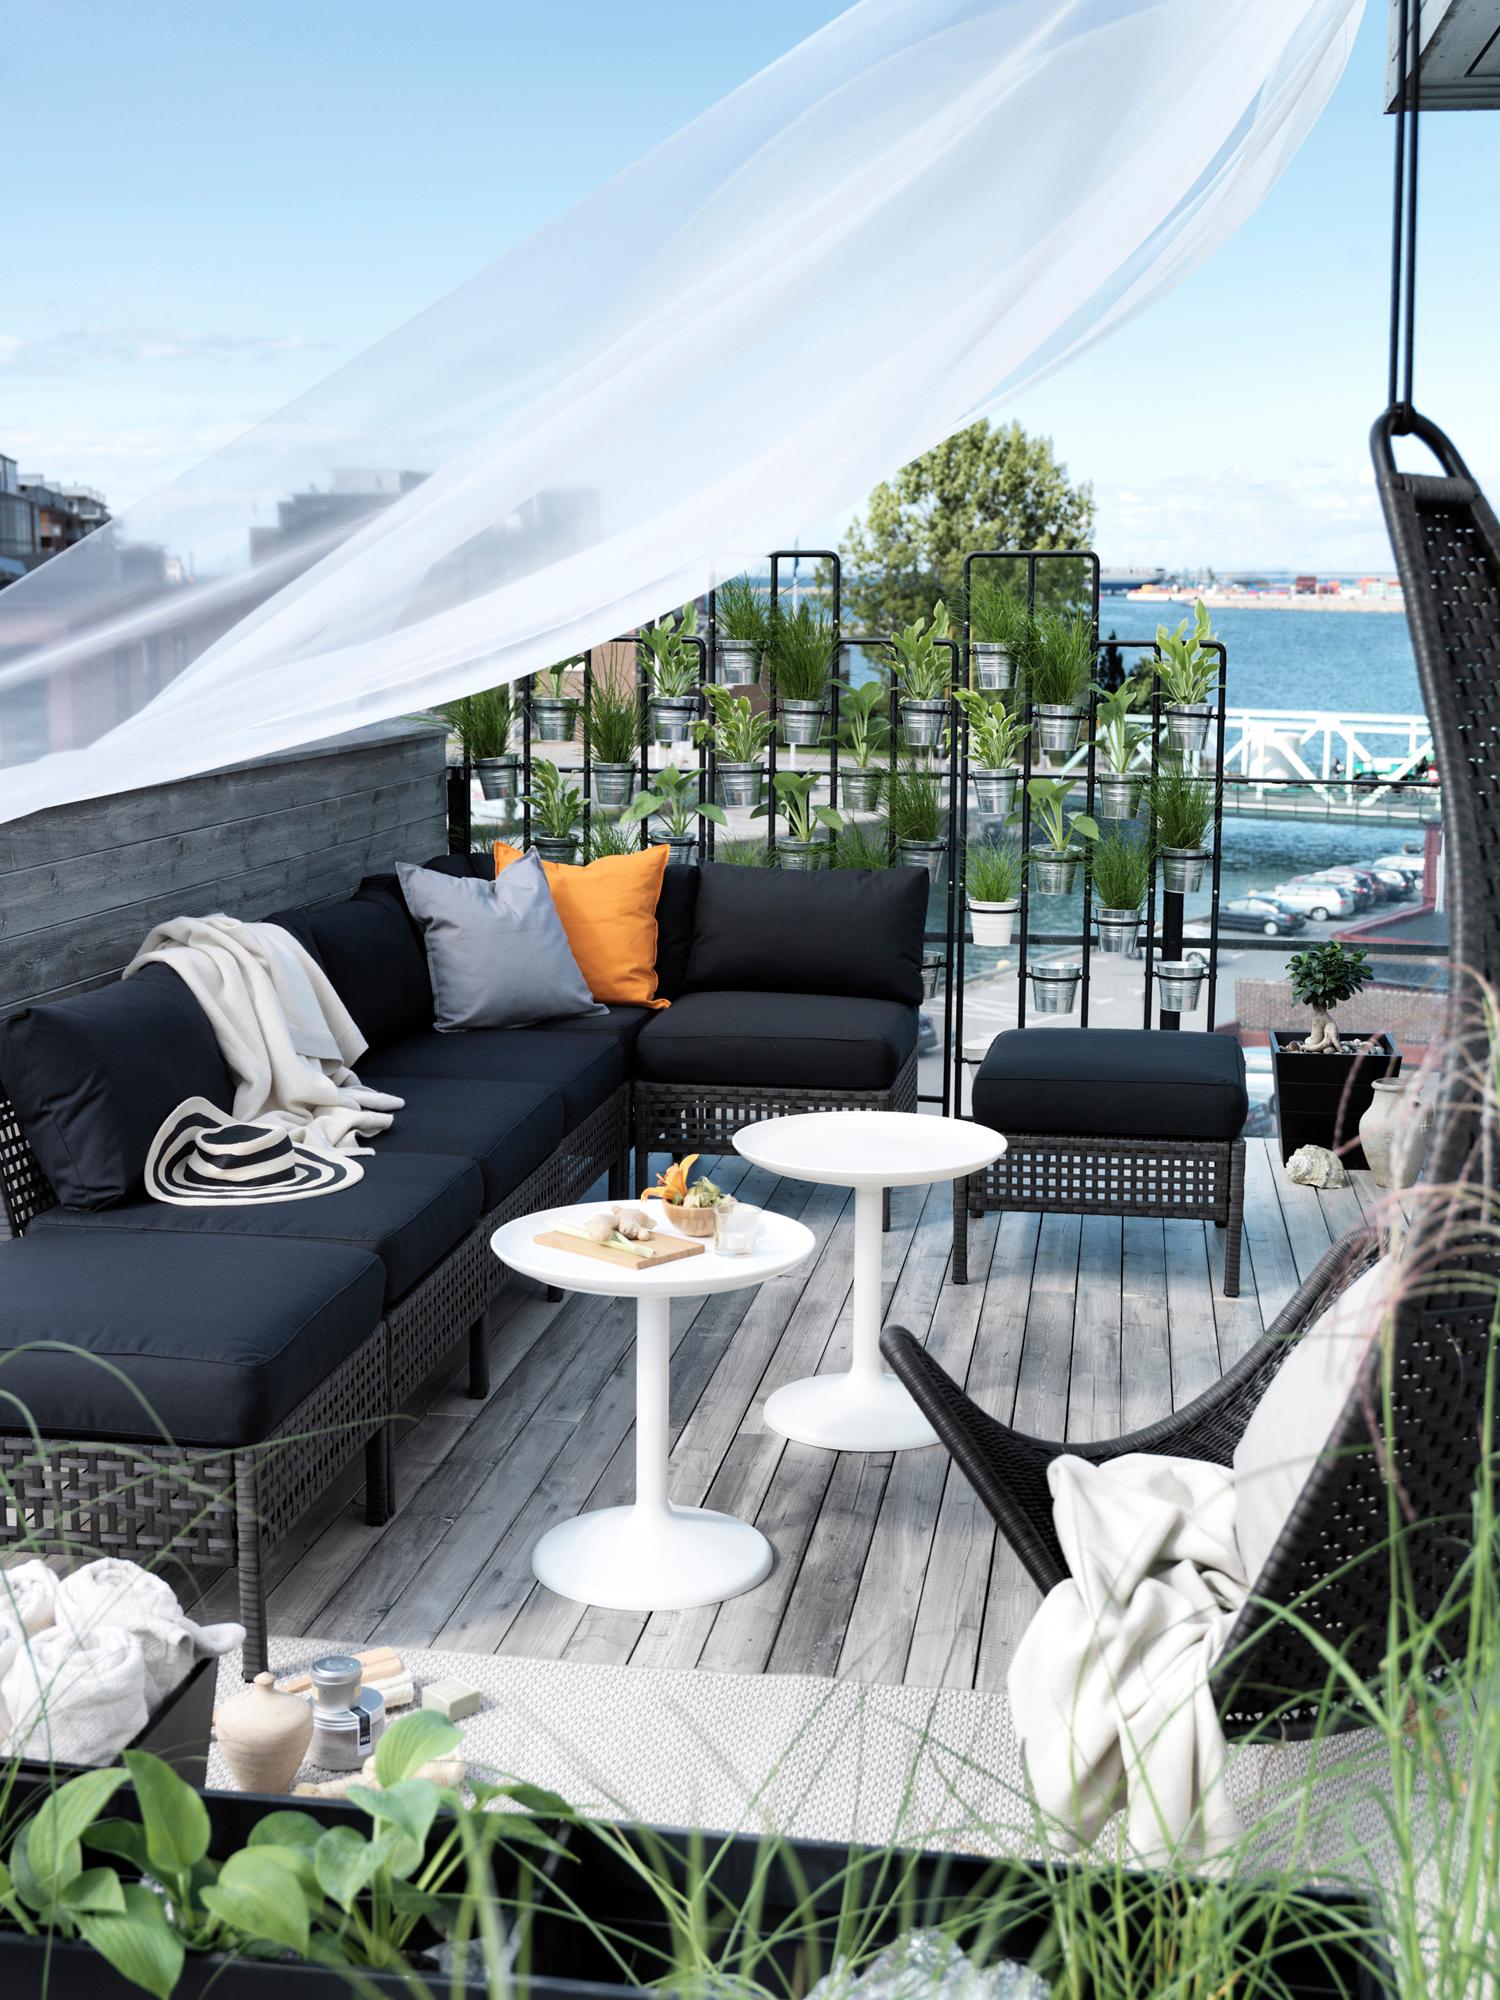 Sitzecke auf der Terrasse #terrasse #baldachin #ikea #gartenmöbel #sichtschutz #sitzbank #sofa #hängesessel #balkonmöbel #holzterrasse #terrassengestaltung #terrassenmöbel #loungemöbel ©Inter IKEA Systems B.V.